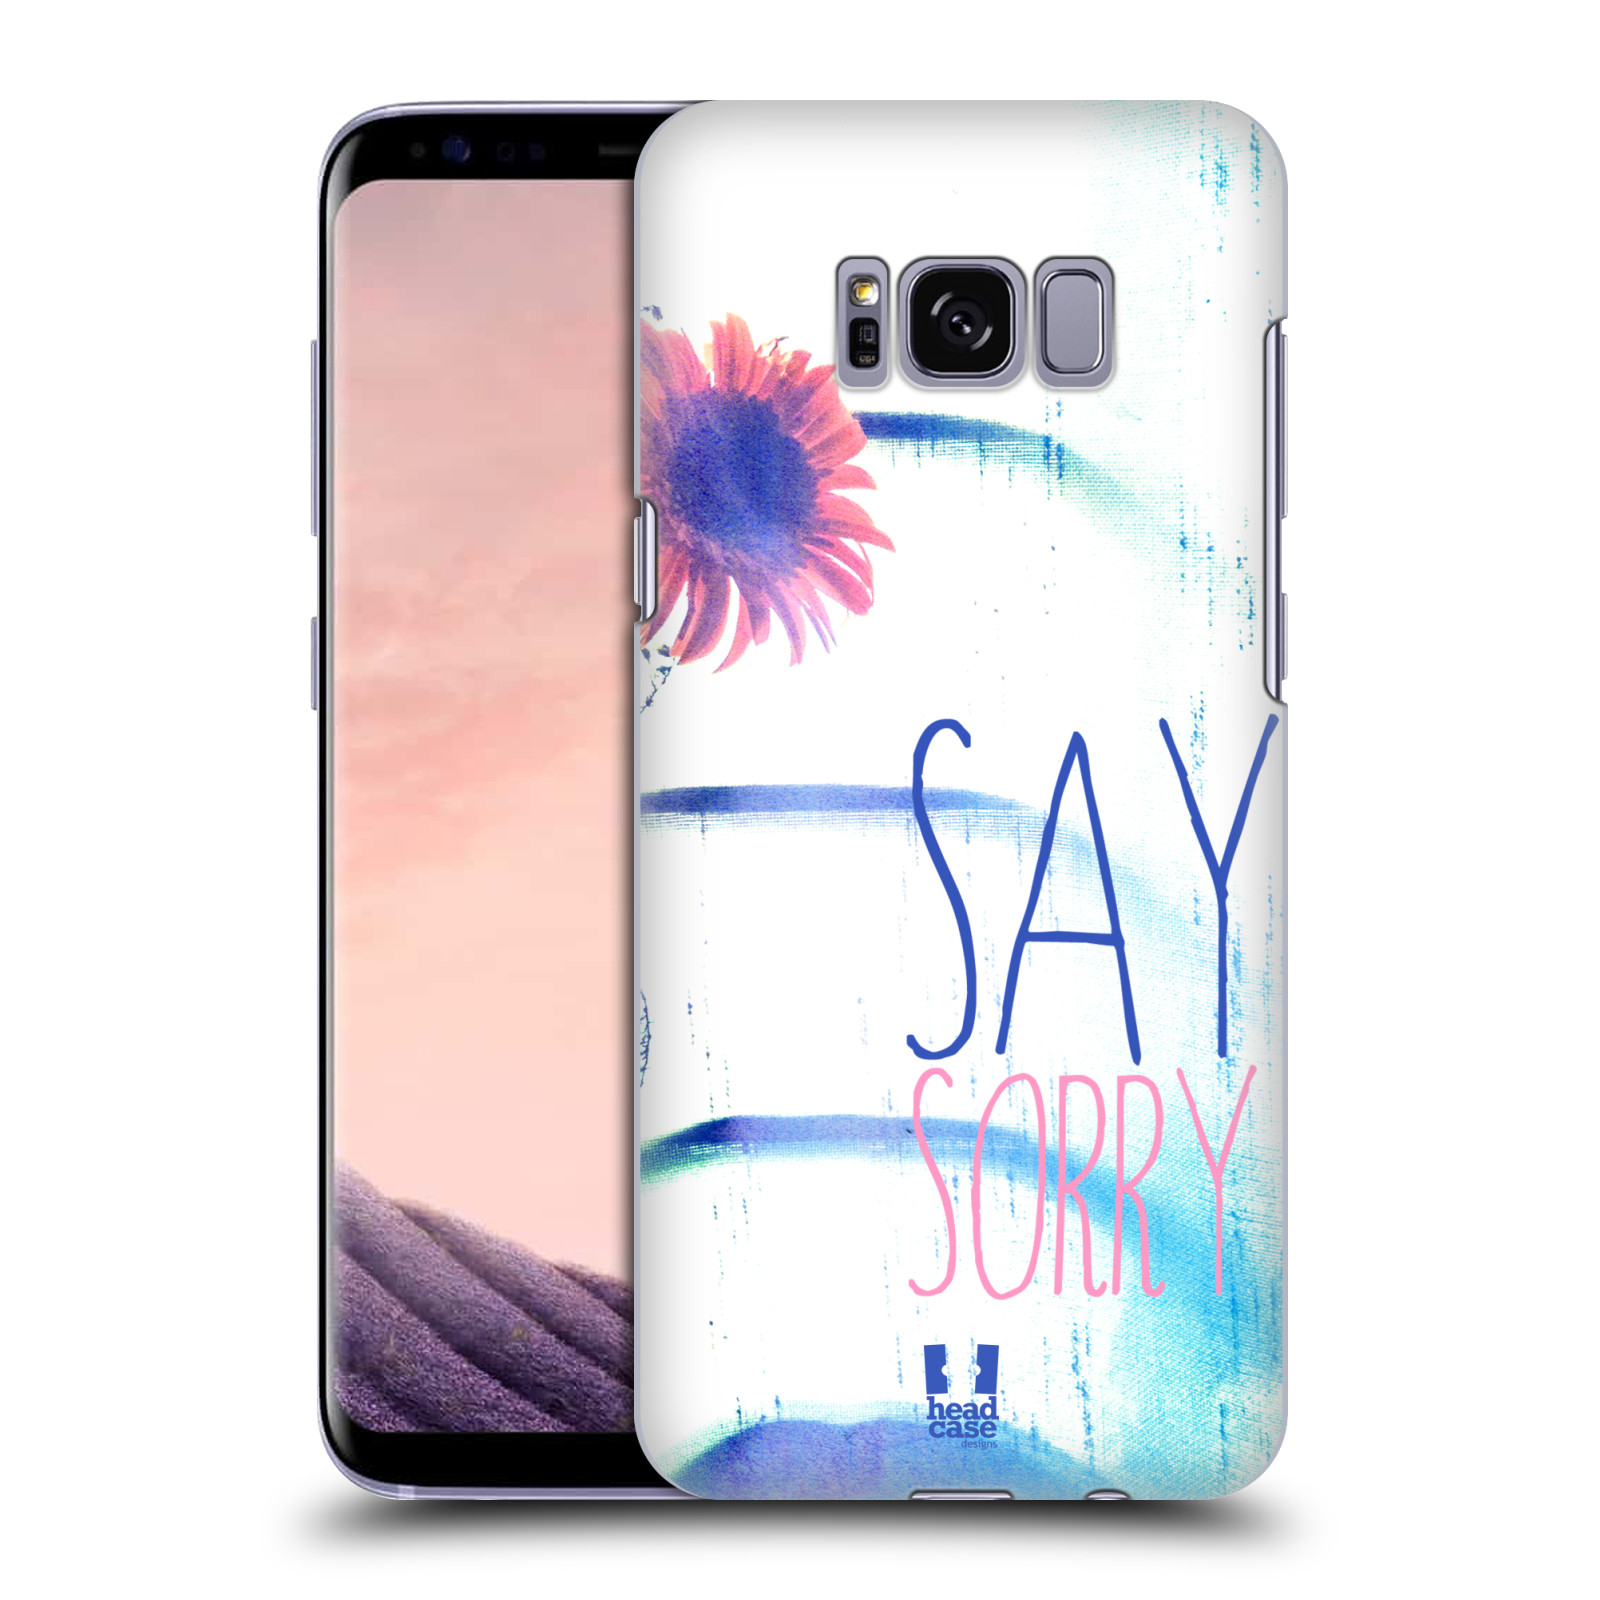 HEAD CASE plastový obal na mobil Samsung Galaxy S8 vzor Pozitivní vlny MODRÁ, růžová květina SAY SORRY